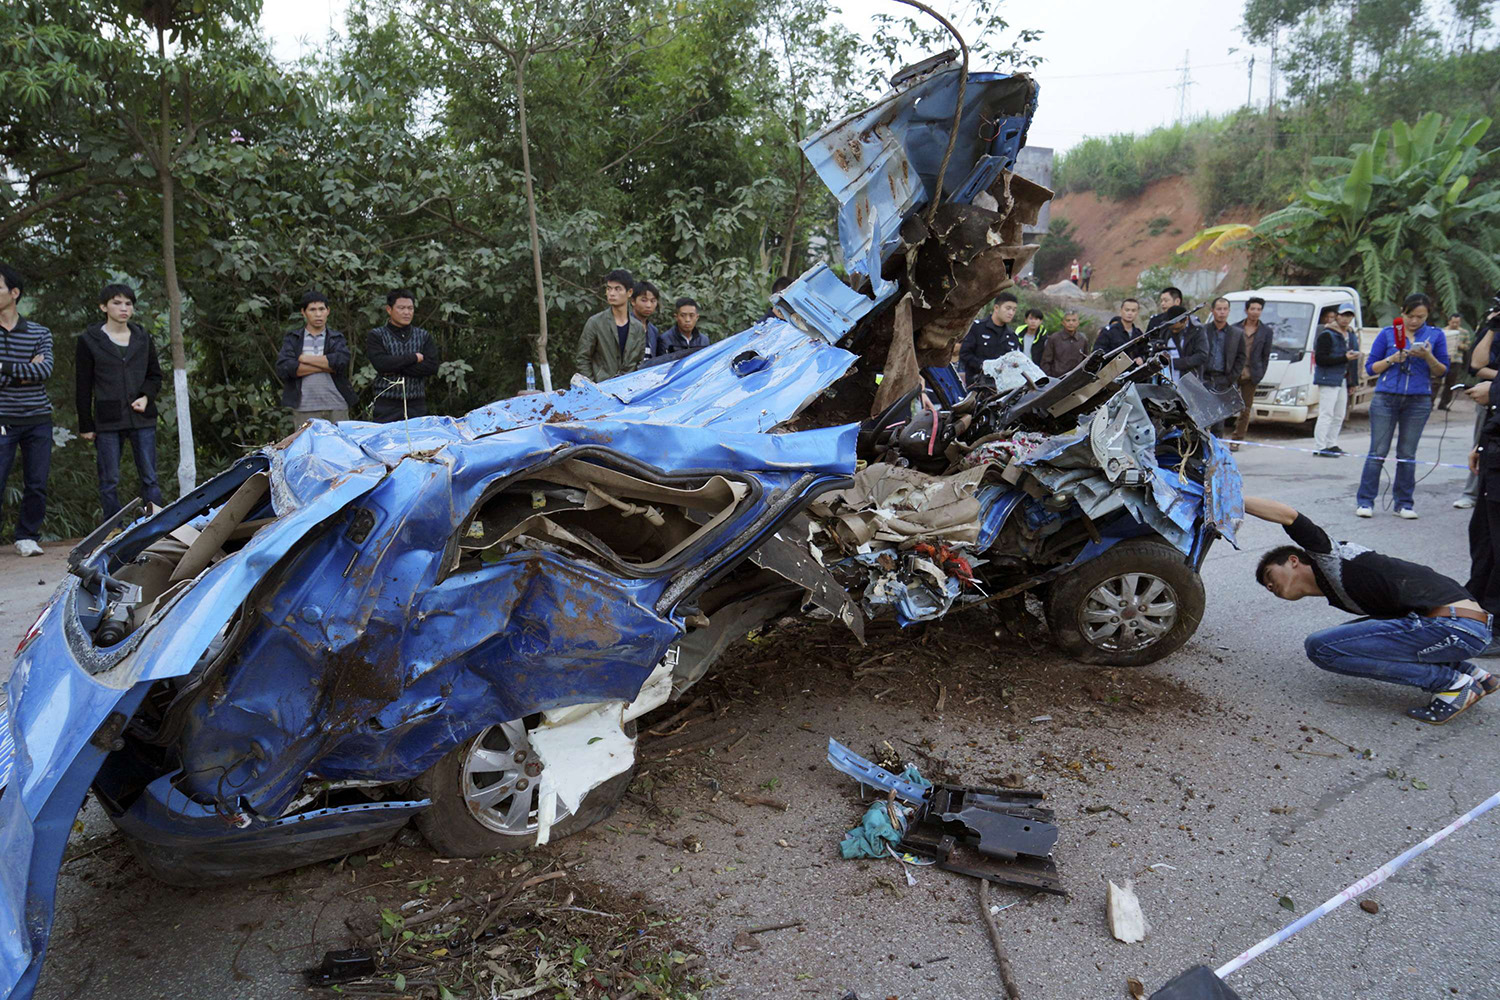 Ocho personas fallecen en un accidente de tráfico en China